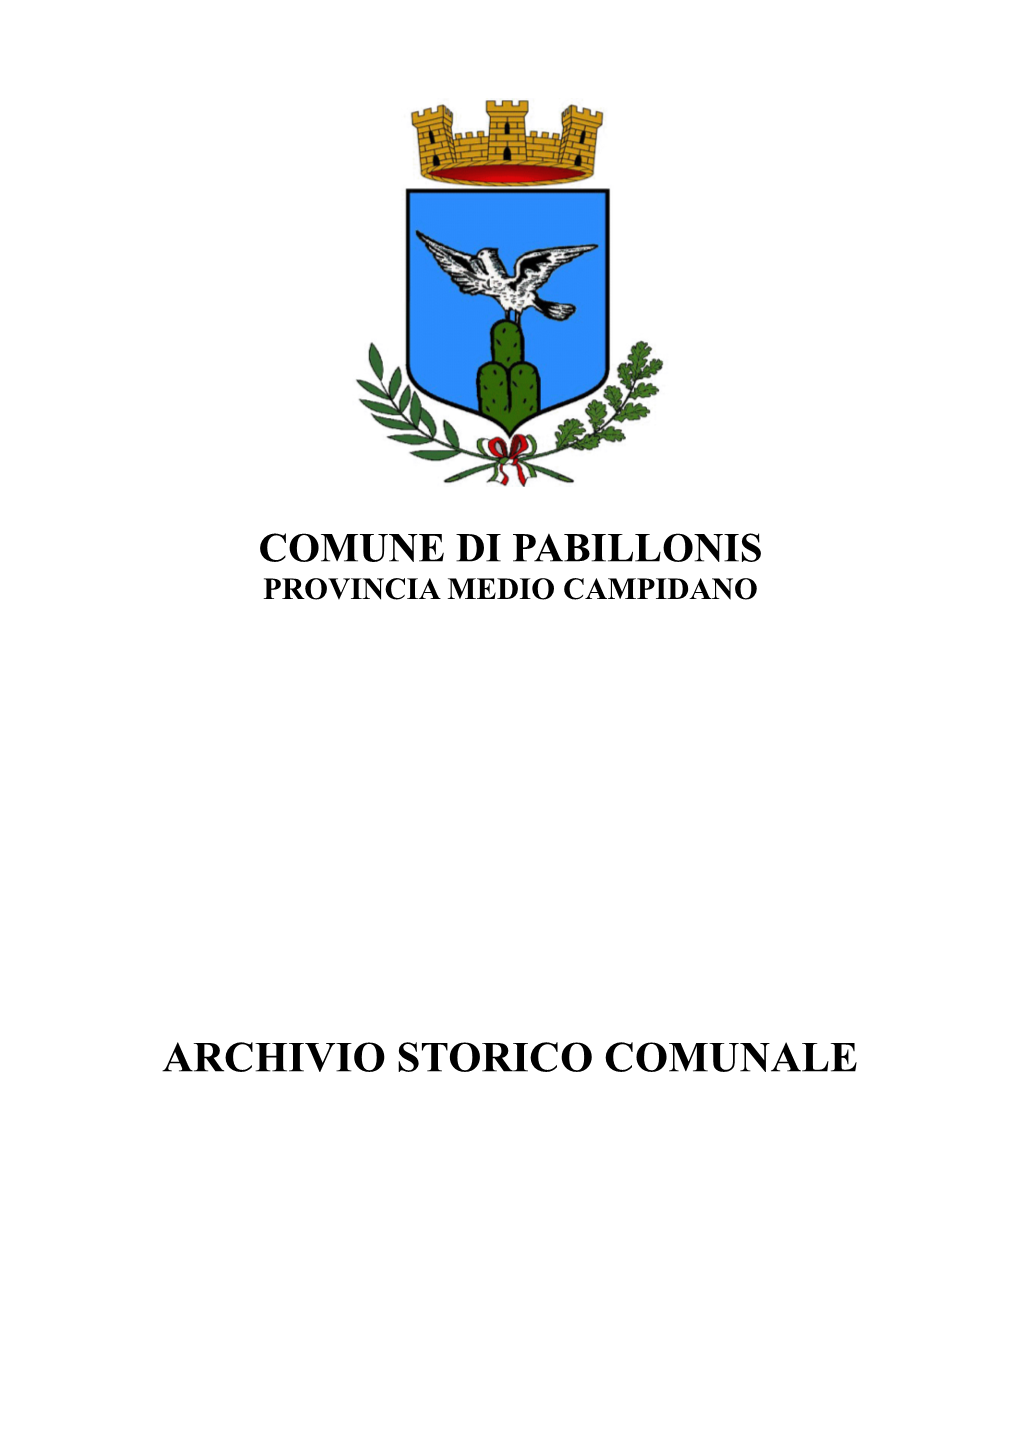 ARCHIVIO STORICO COMUNALE COMUNE DI PABILLONIS (C G207) - Codice AOO: 01071956 - Reg